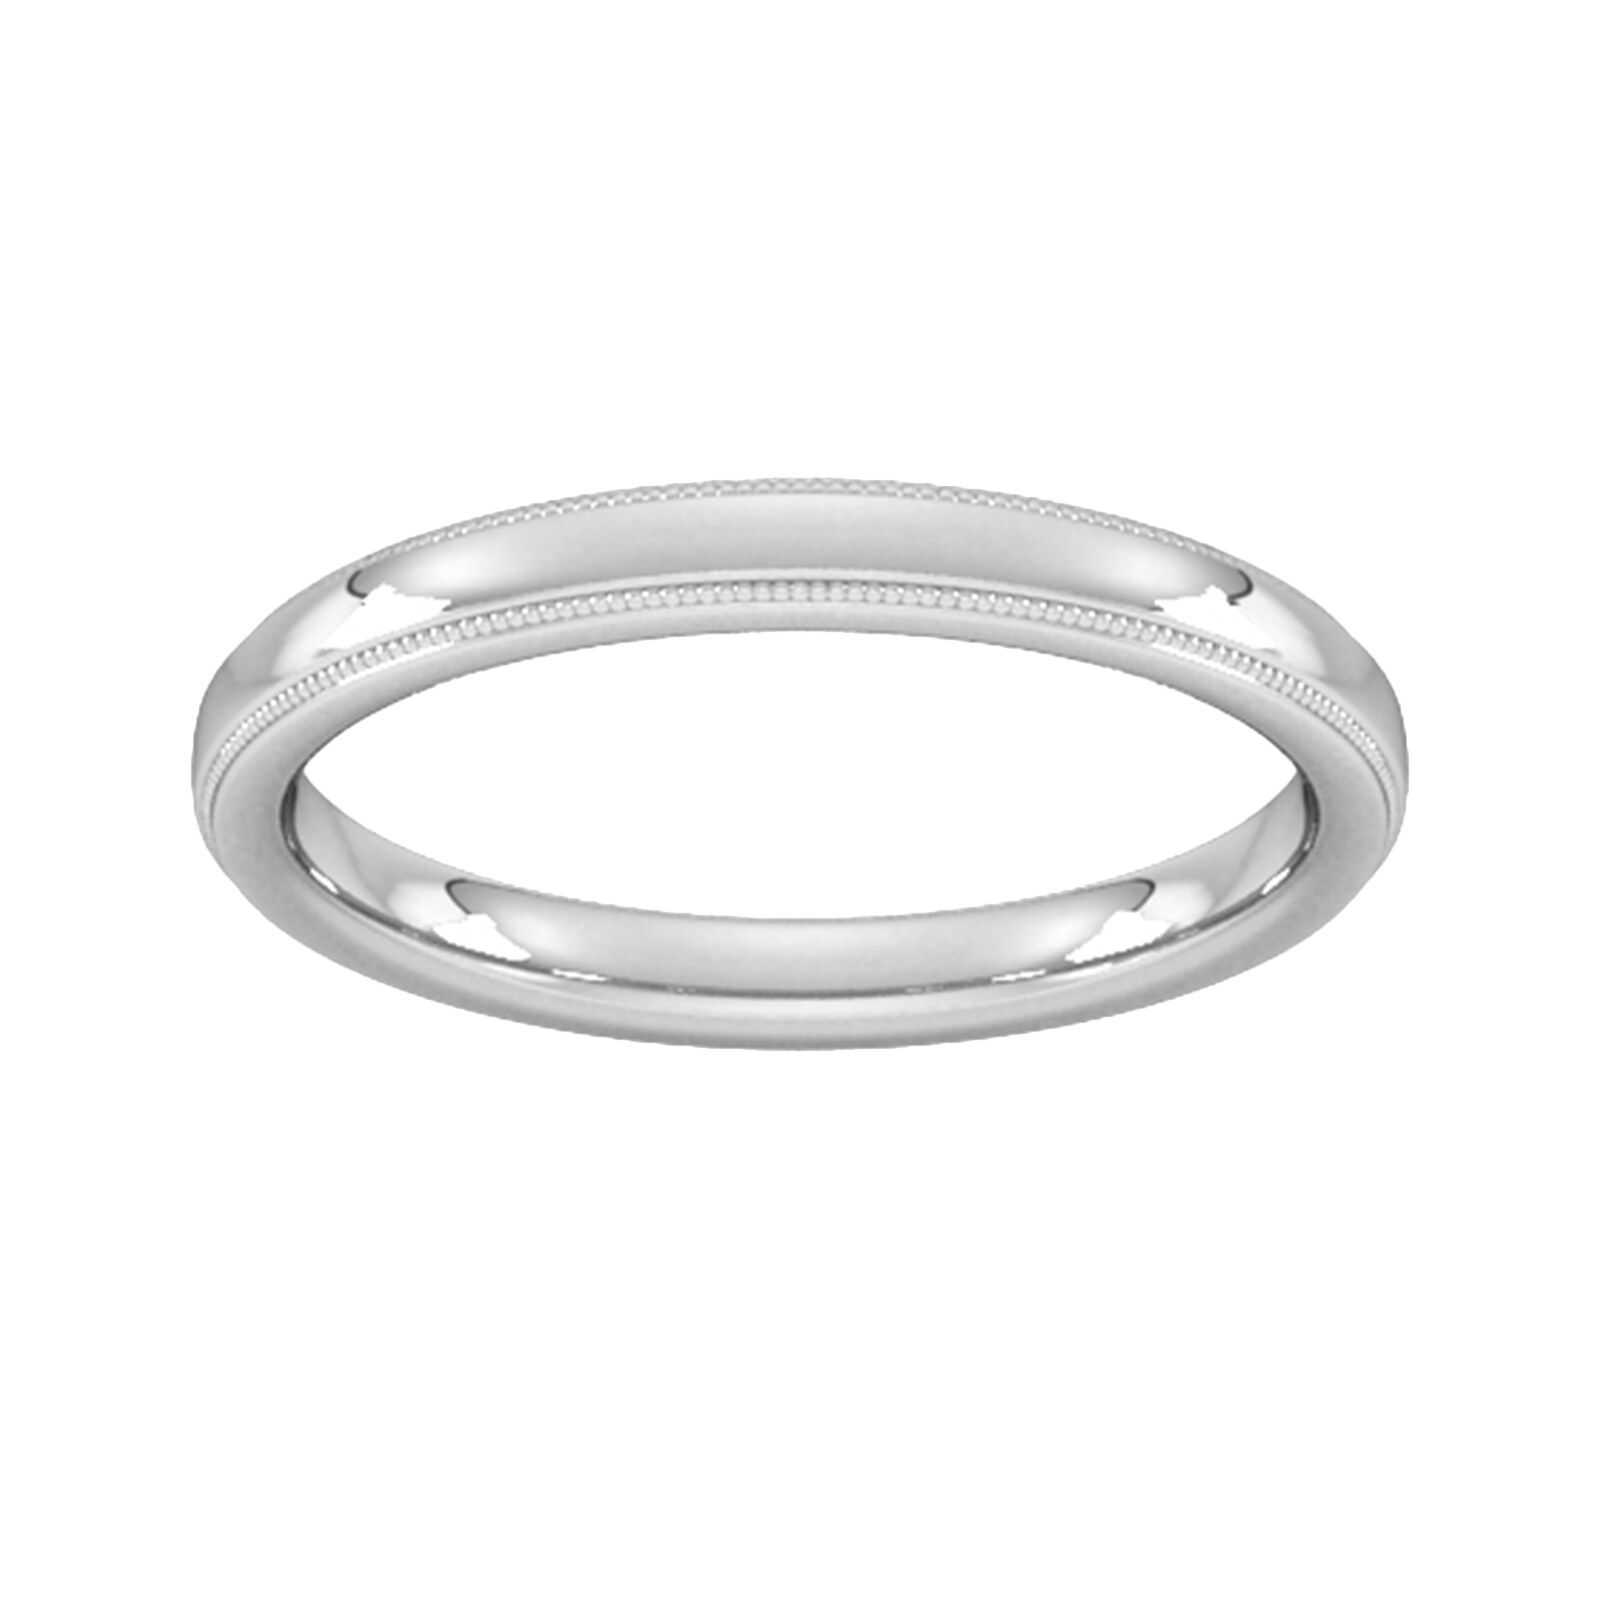 2.5mm Slight Court Standard Milgrain Edge Wedding Ring In 9 Carat White Gold - Ring Size G